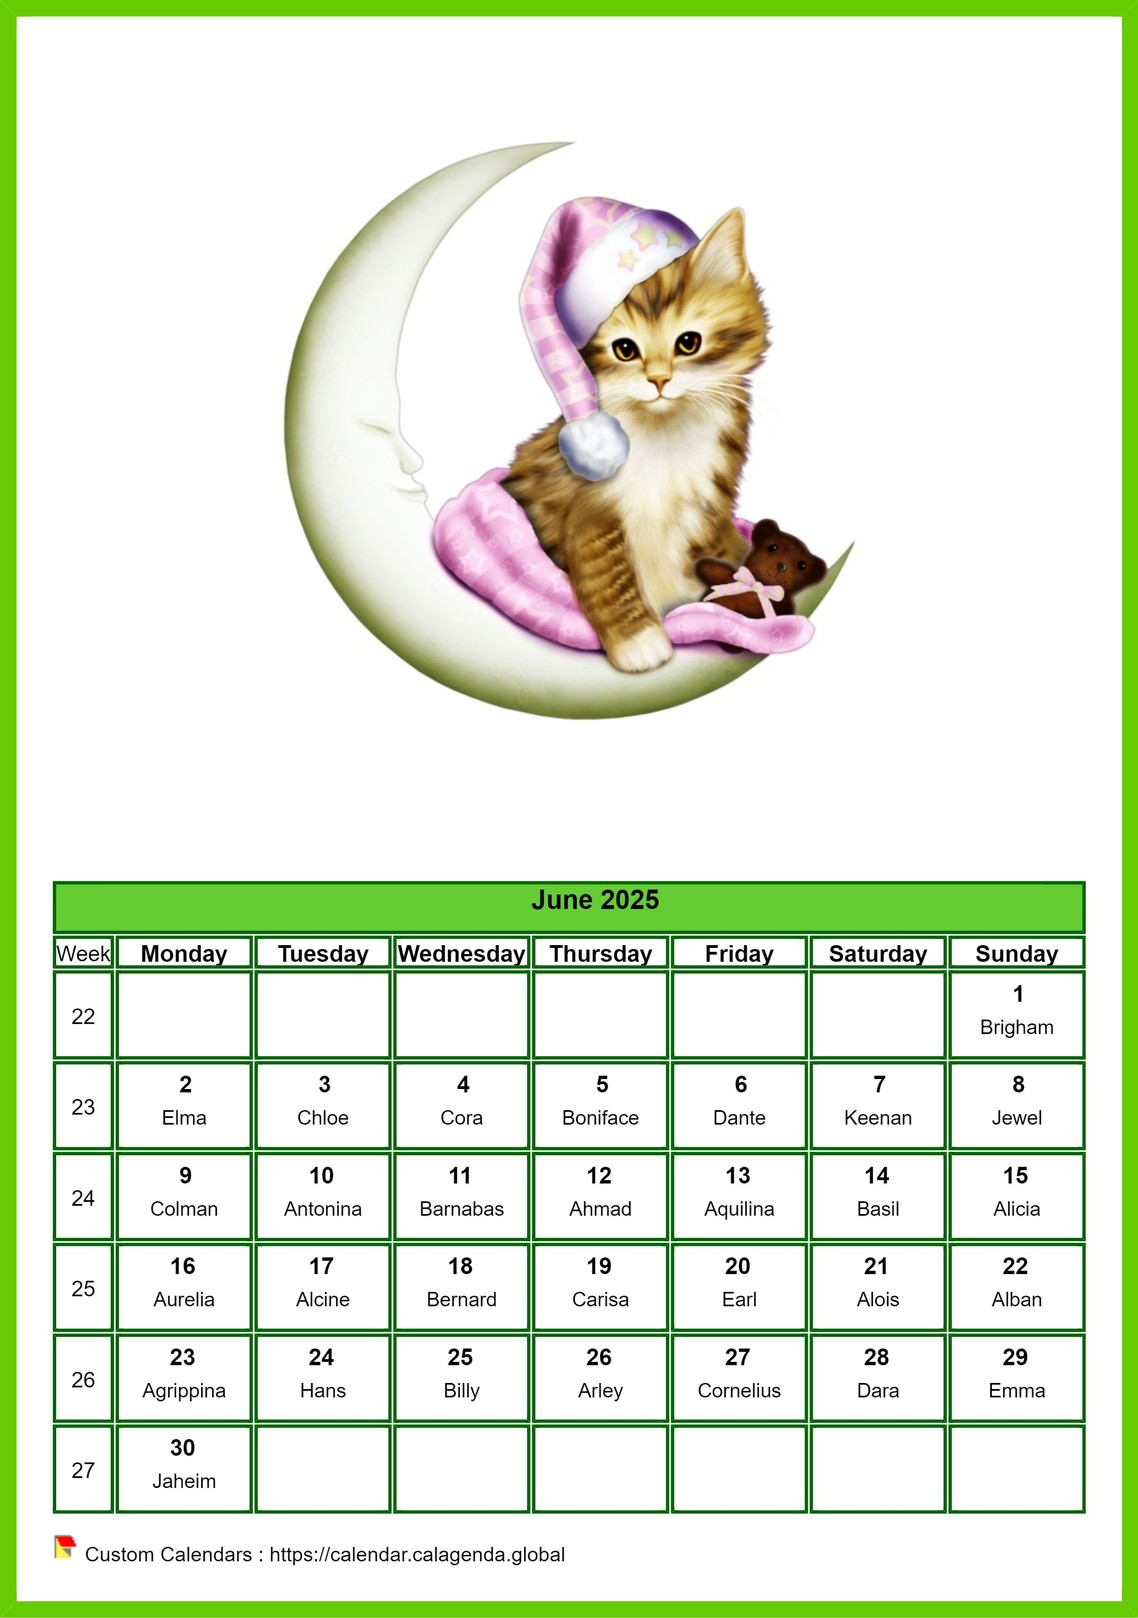 Calendar June 2025 cats